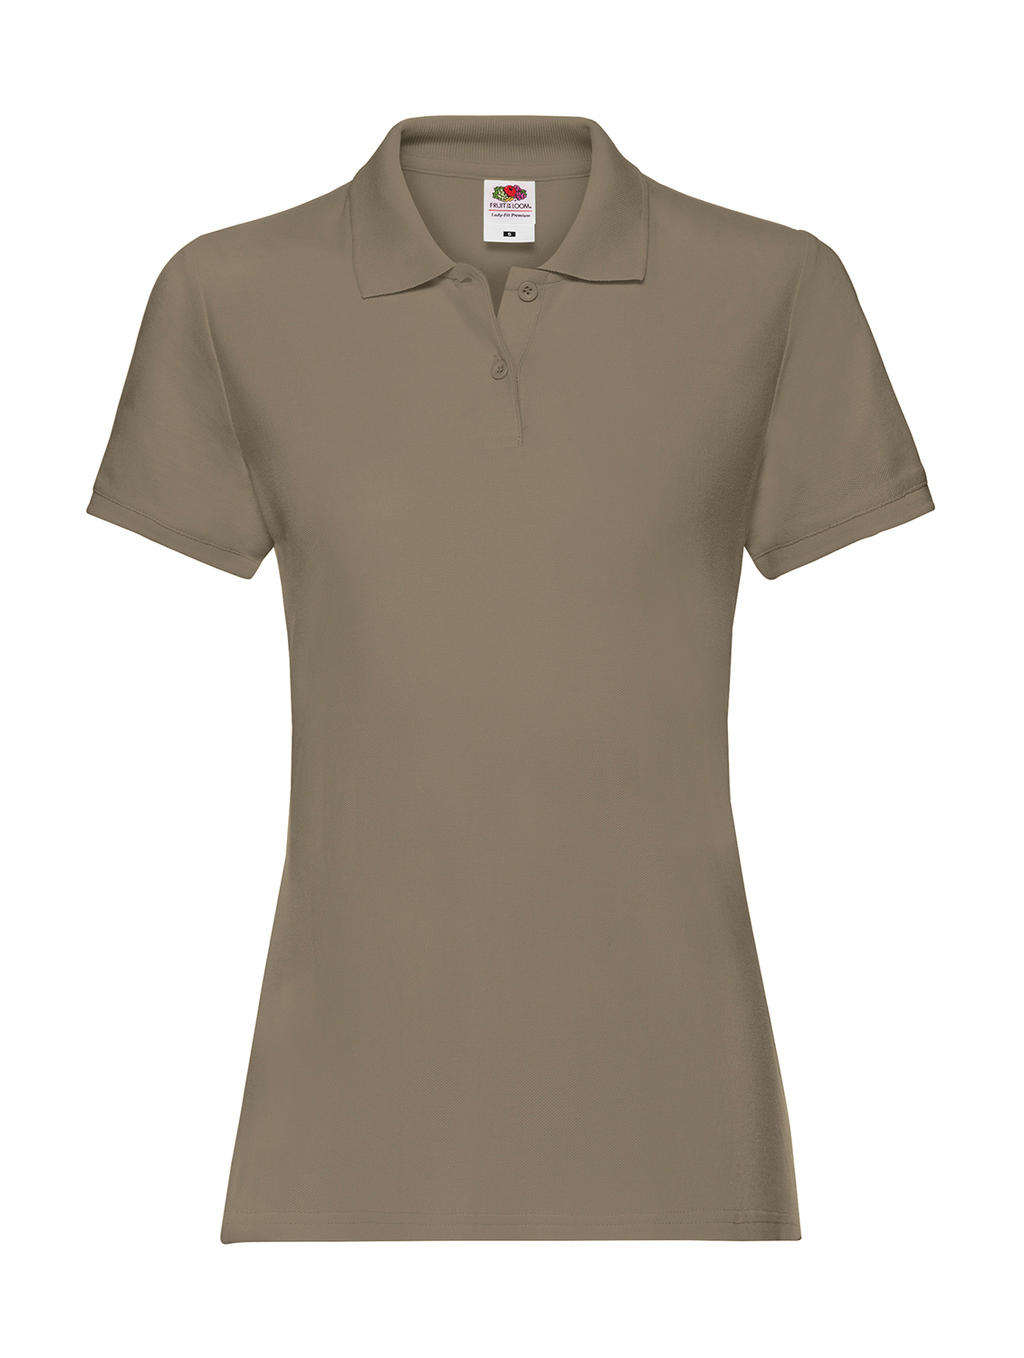  Ladies Premium Polo in Farbe Khaki